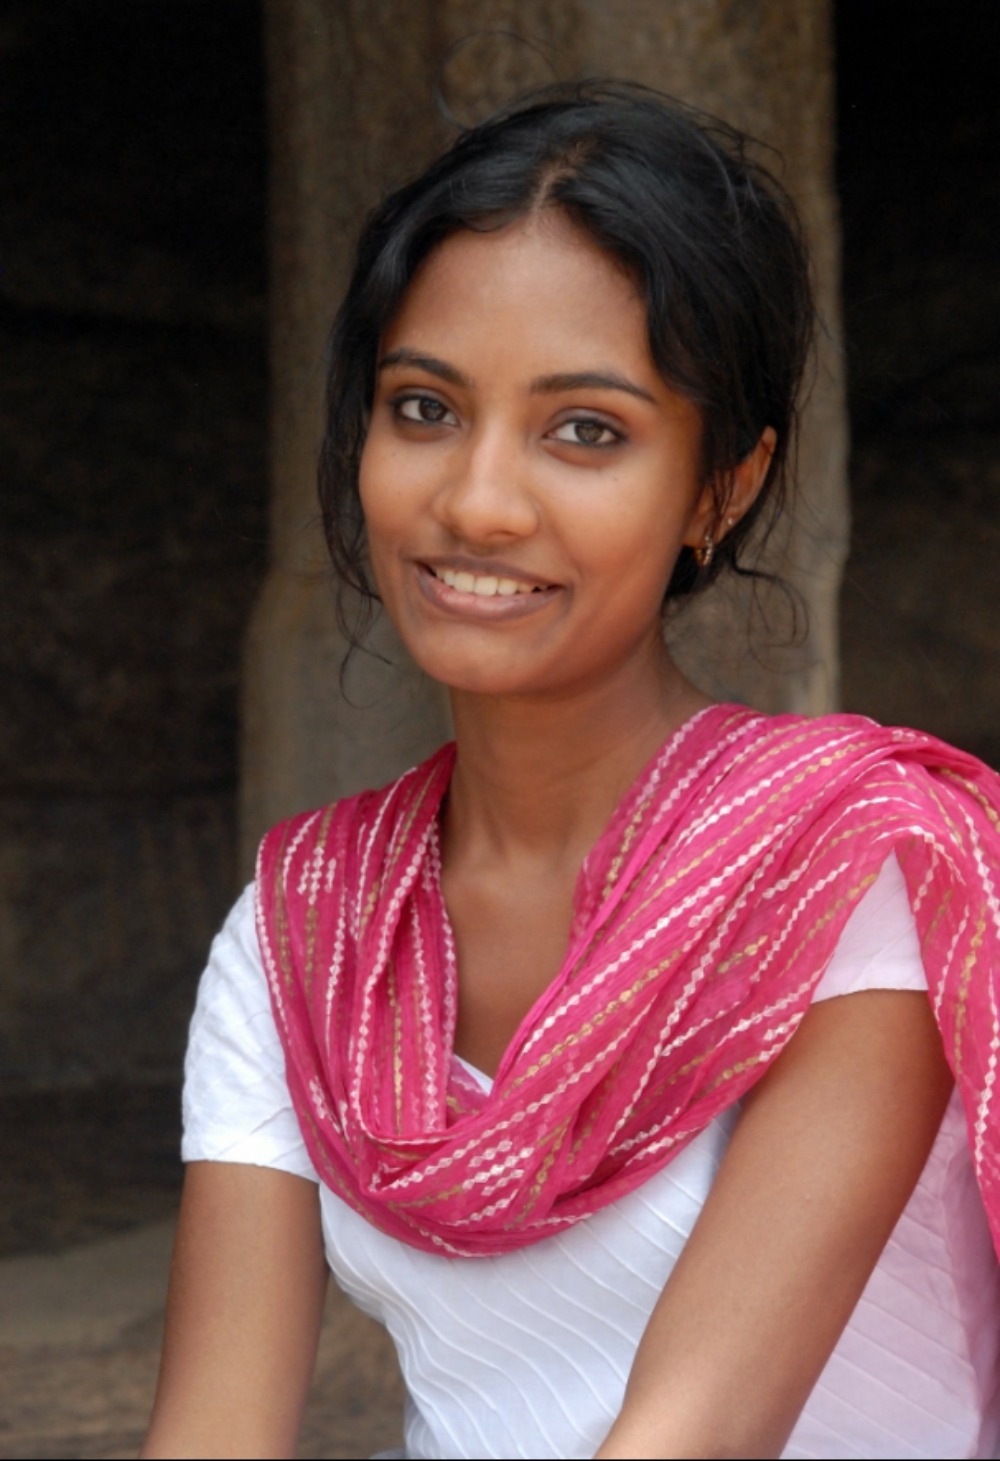 Μια πανέμορφη γυναίκα από το Mahabalipuram της Ινδίας